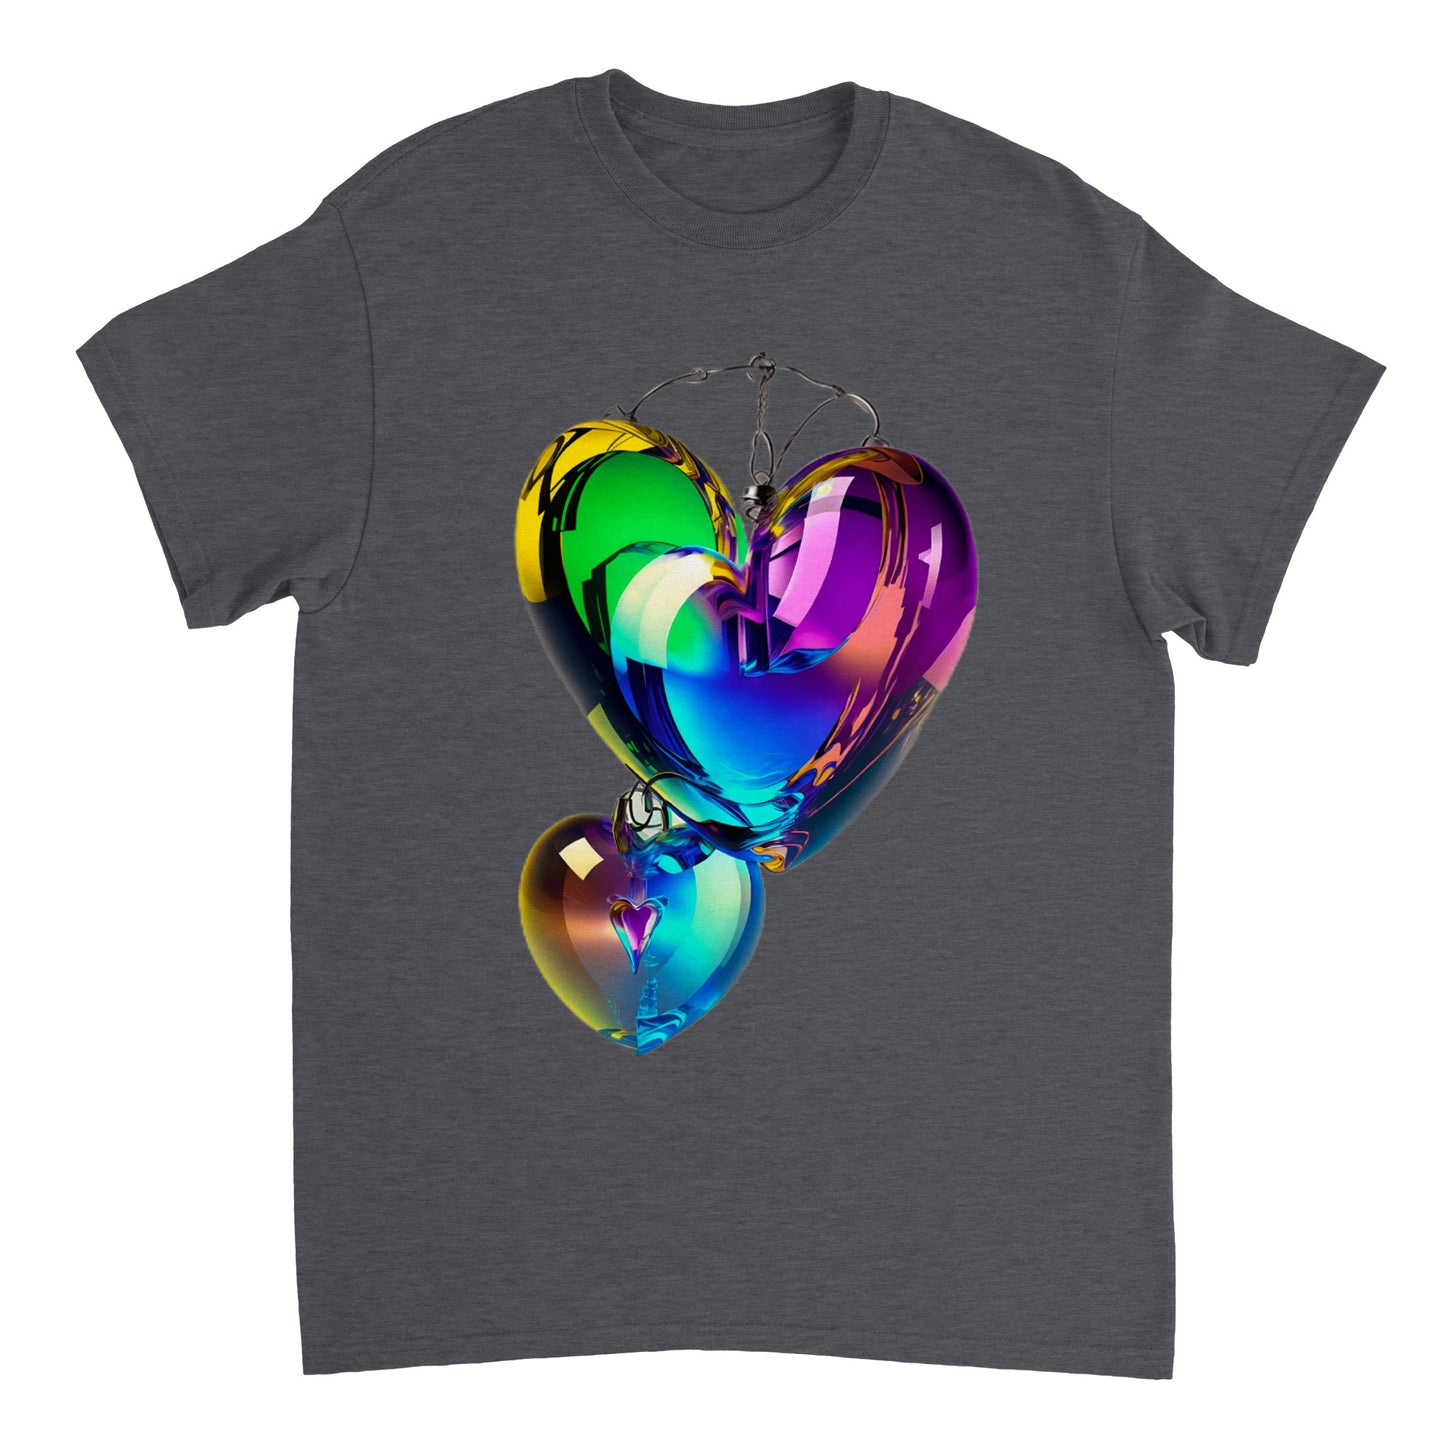 Love Heart - Heavyweight Unisex Crewneck T-shirt 4